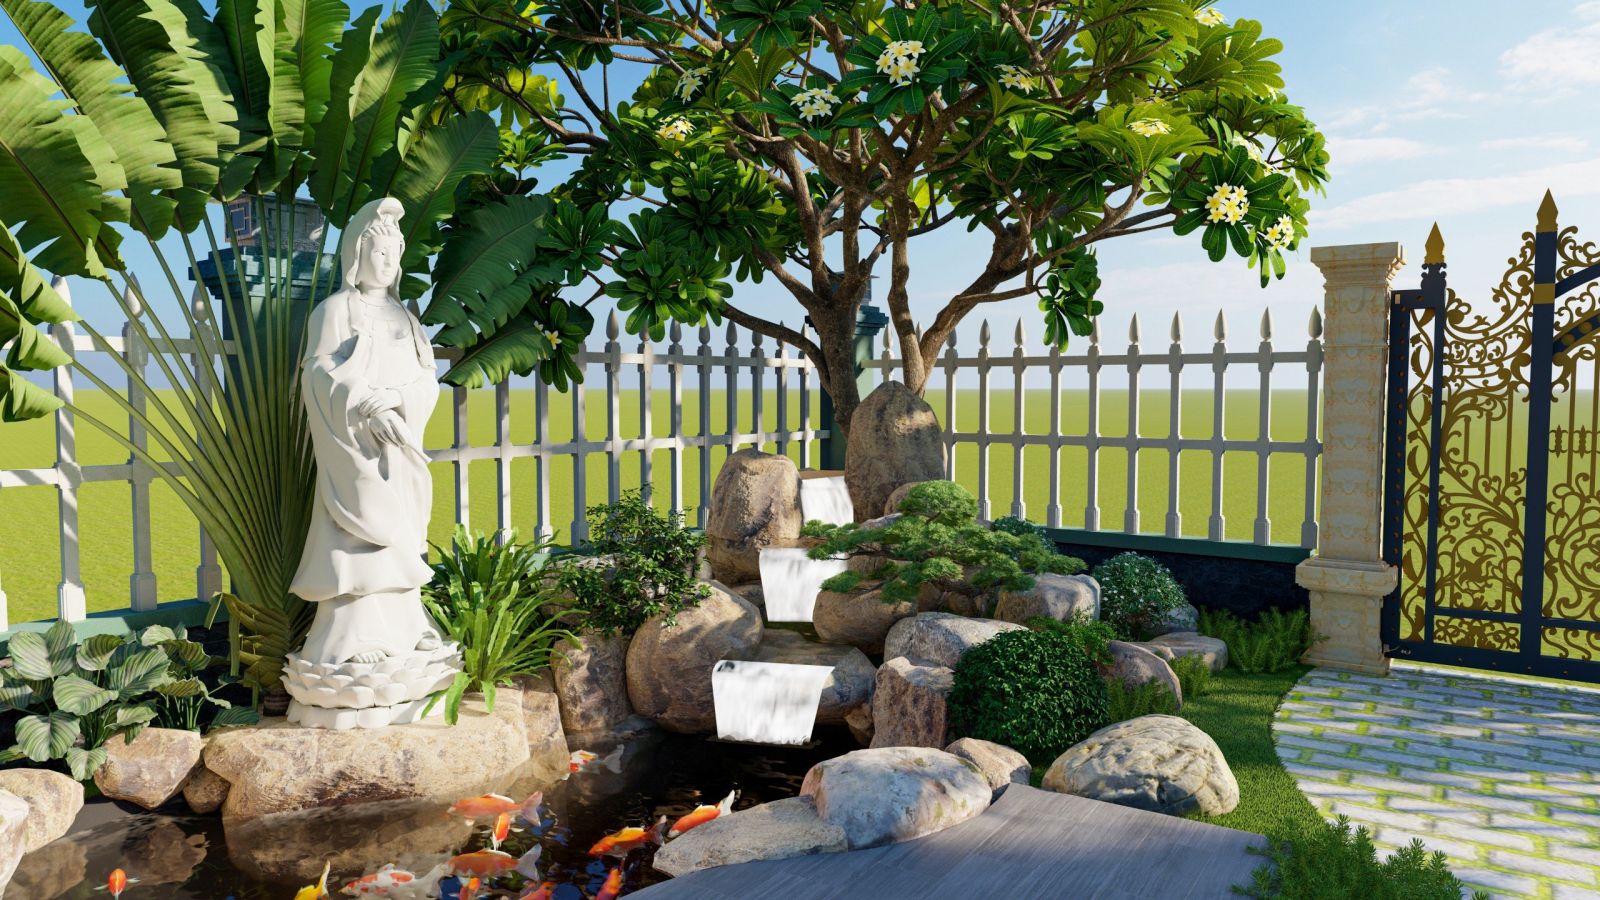 Tượng Phật Bà Quan Âm mang yếu tố tâm linh trong sân vườn á đông